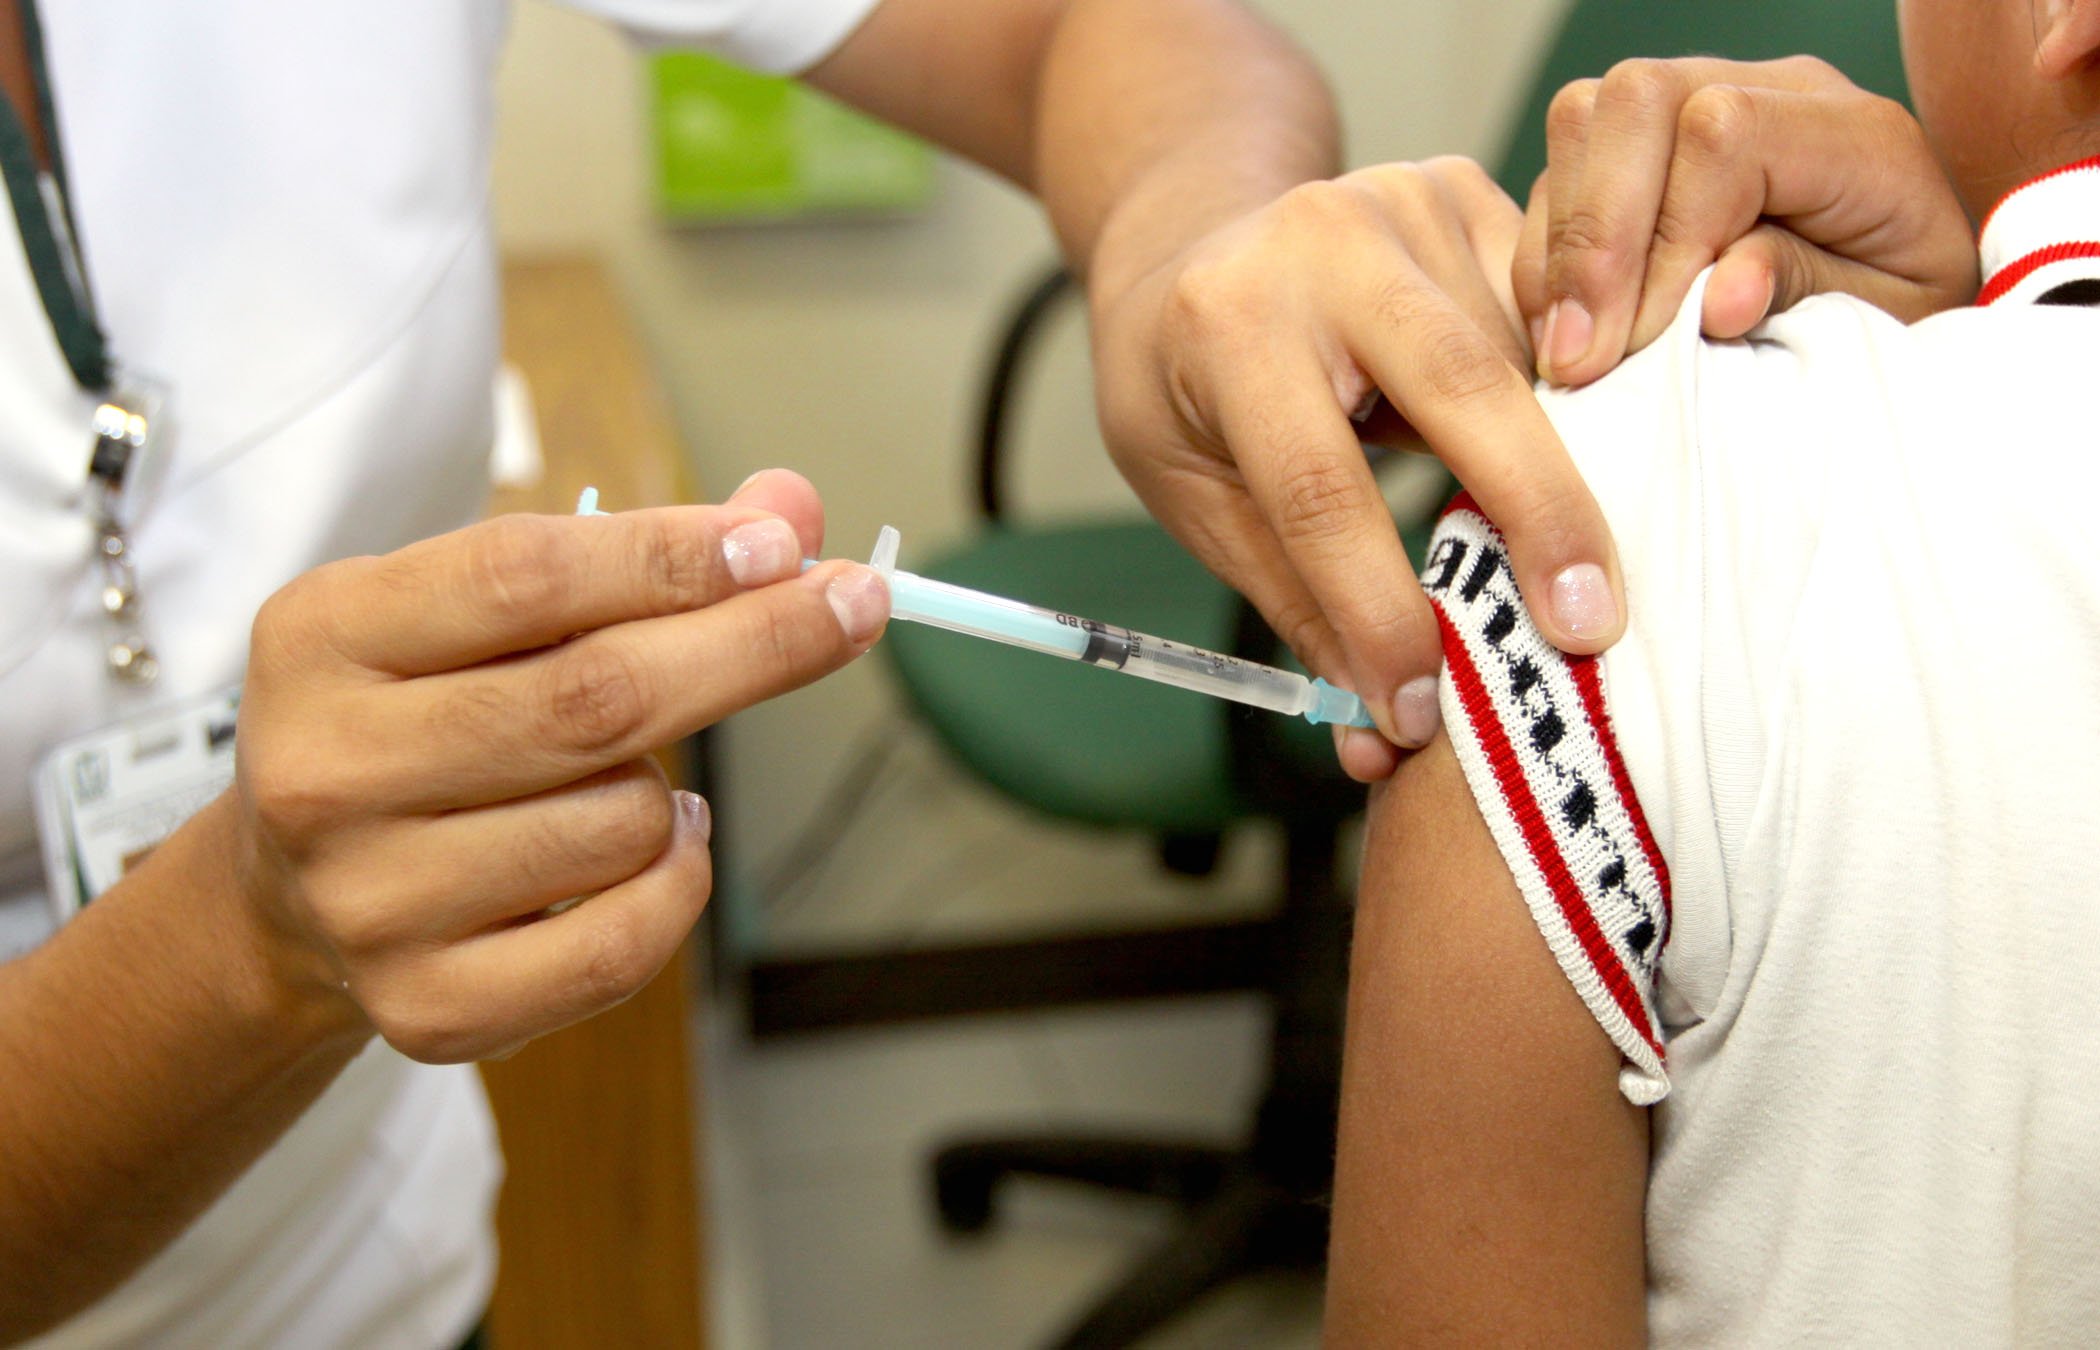 En próximas semanas iniciará vacunación contra influenza: Ssa